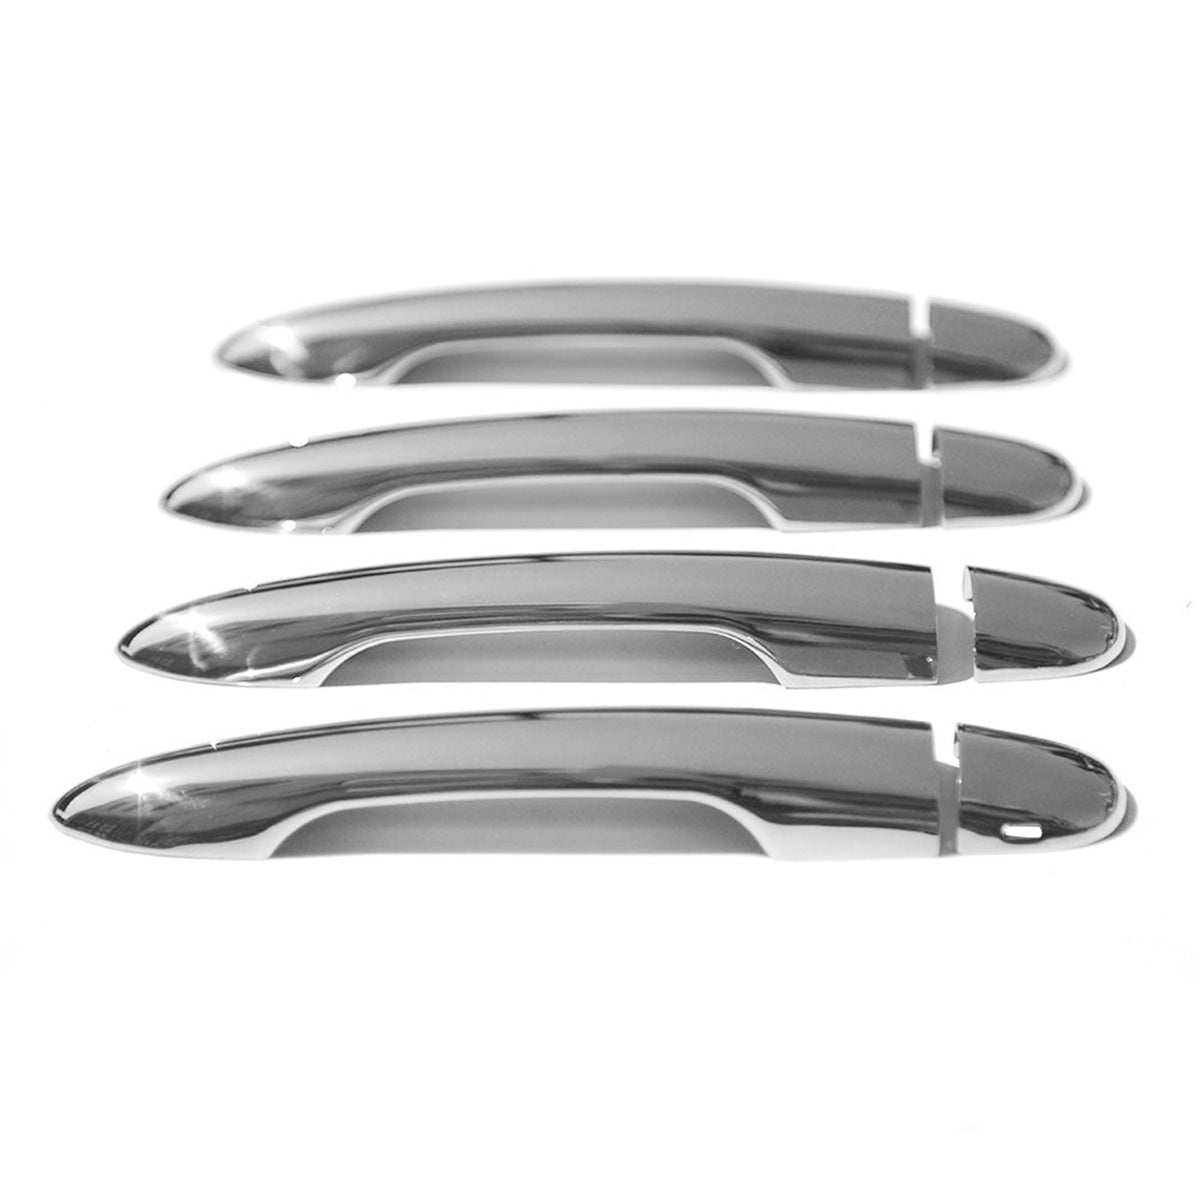 For Renault Espace 2002-2014 chrome door handle caps covers stainless steel 4-door 8 pieces